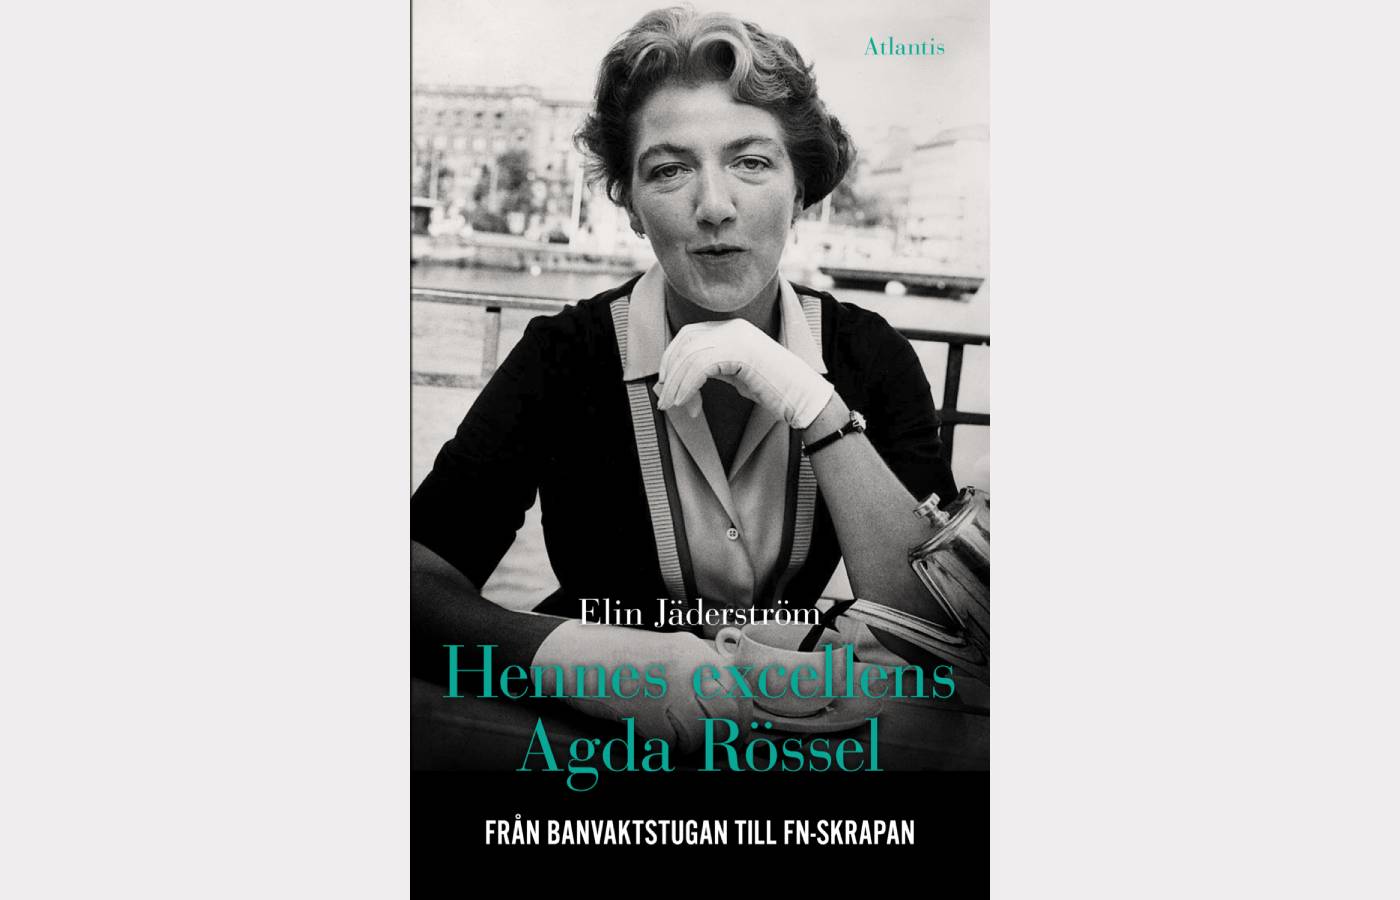 Bokomslag till boken Hennes excellens Agda Rössel, Från barnvaktstugan till FN-skrapan av Elin Jäderström